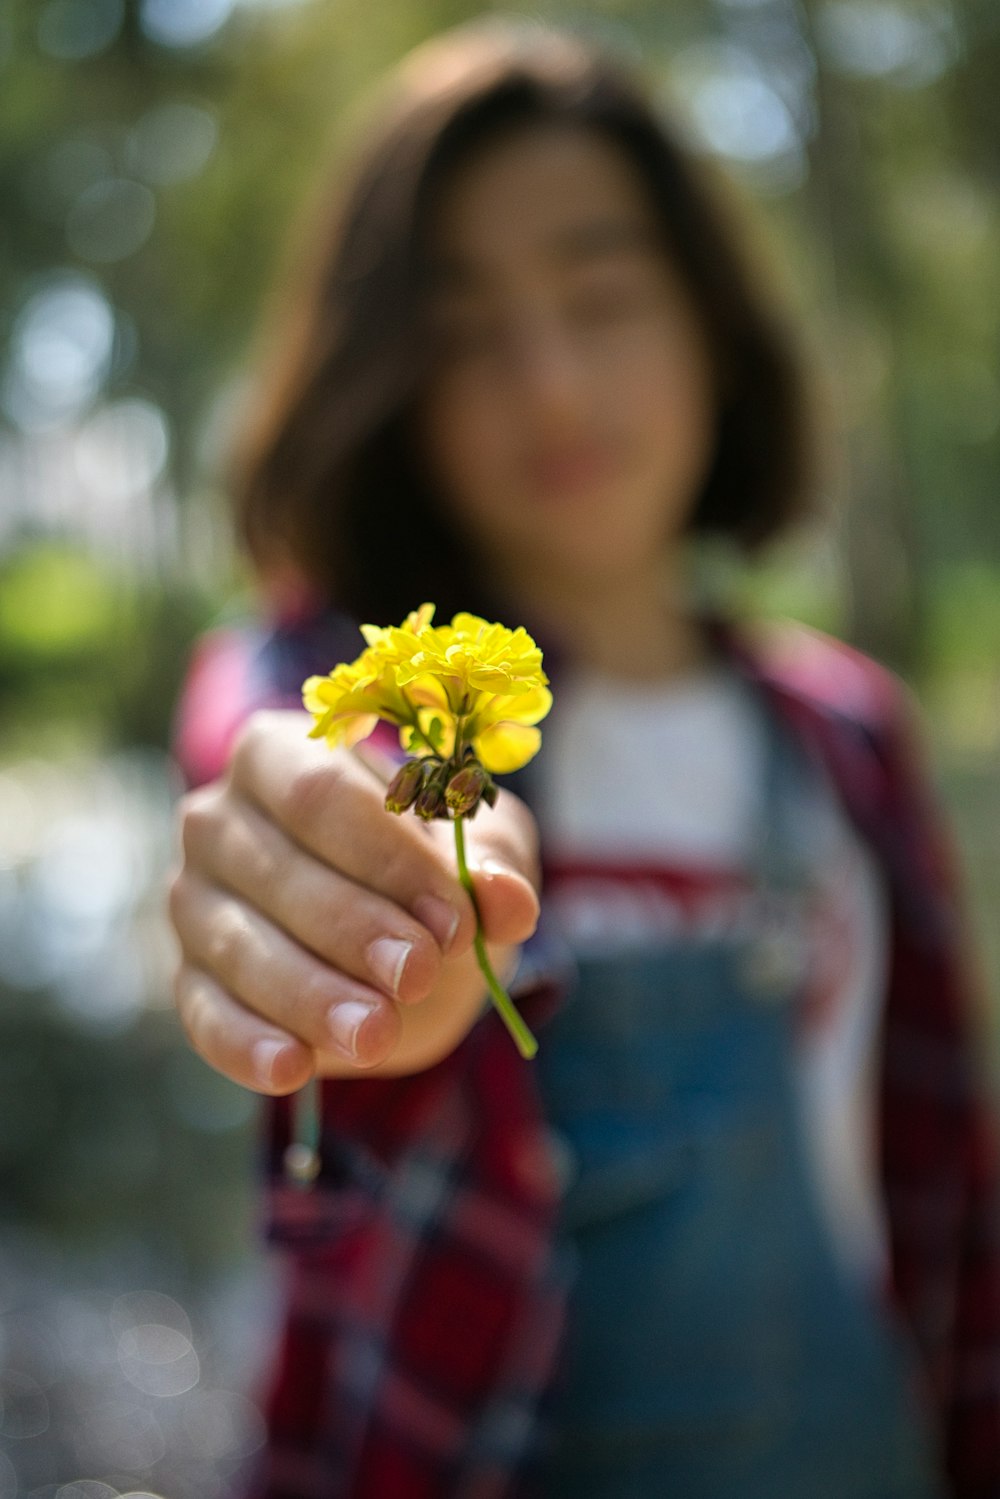 빨간색과 흰색 긴 소매 셔츠에 노란 꽃을 들고 있는 소녀